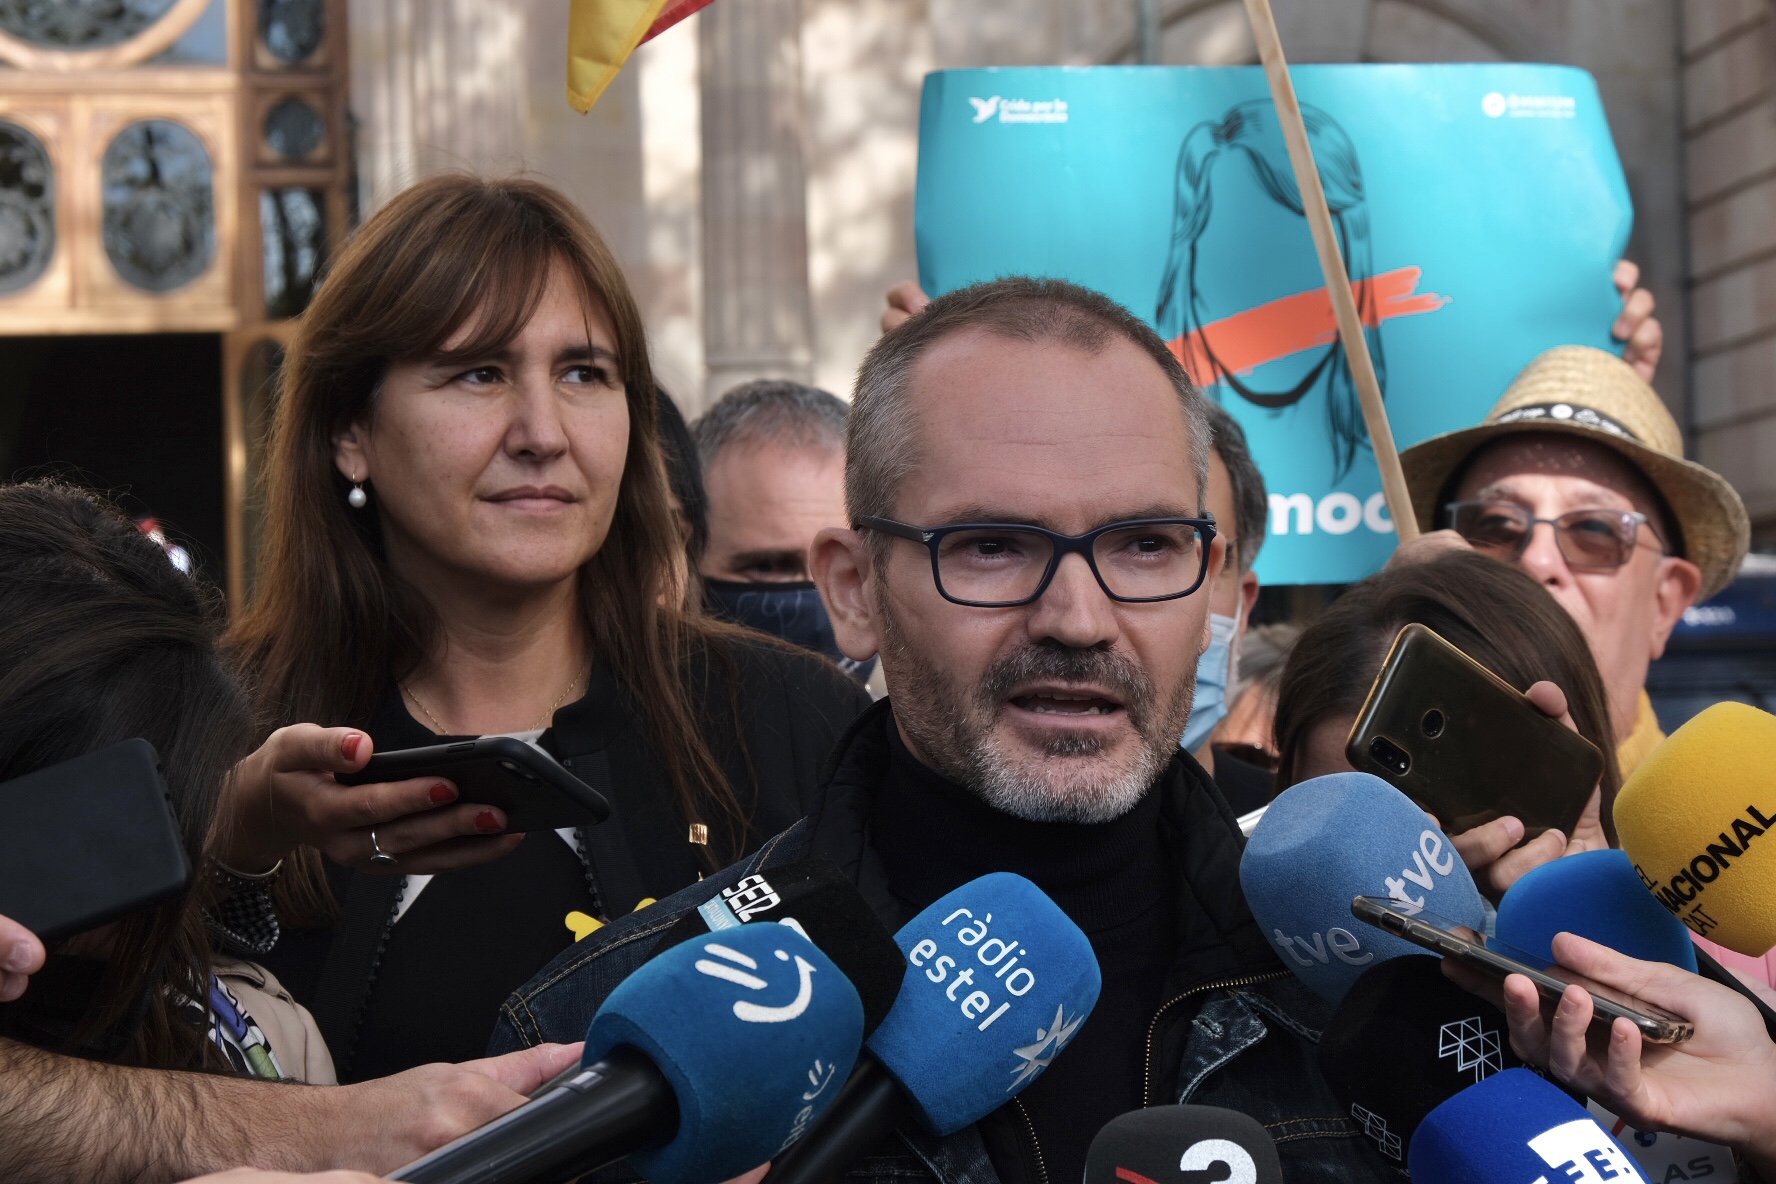 Martín Blanco, contra Laura Borràs y Josep Costa: "Galopante degradación de Catalunya"